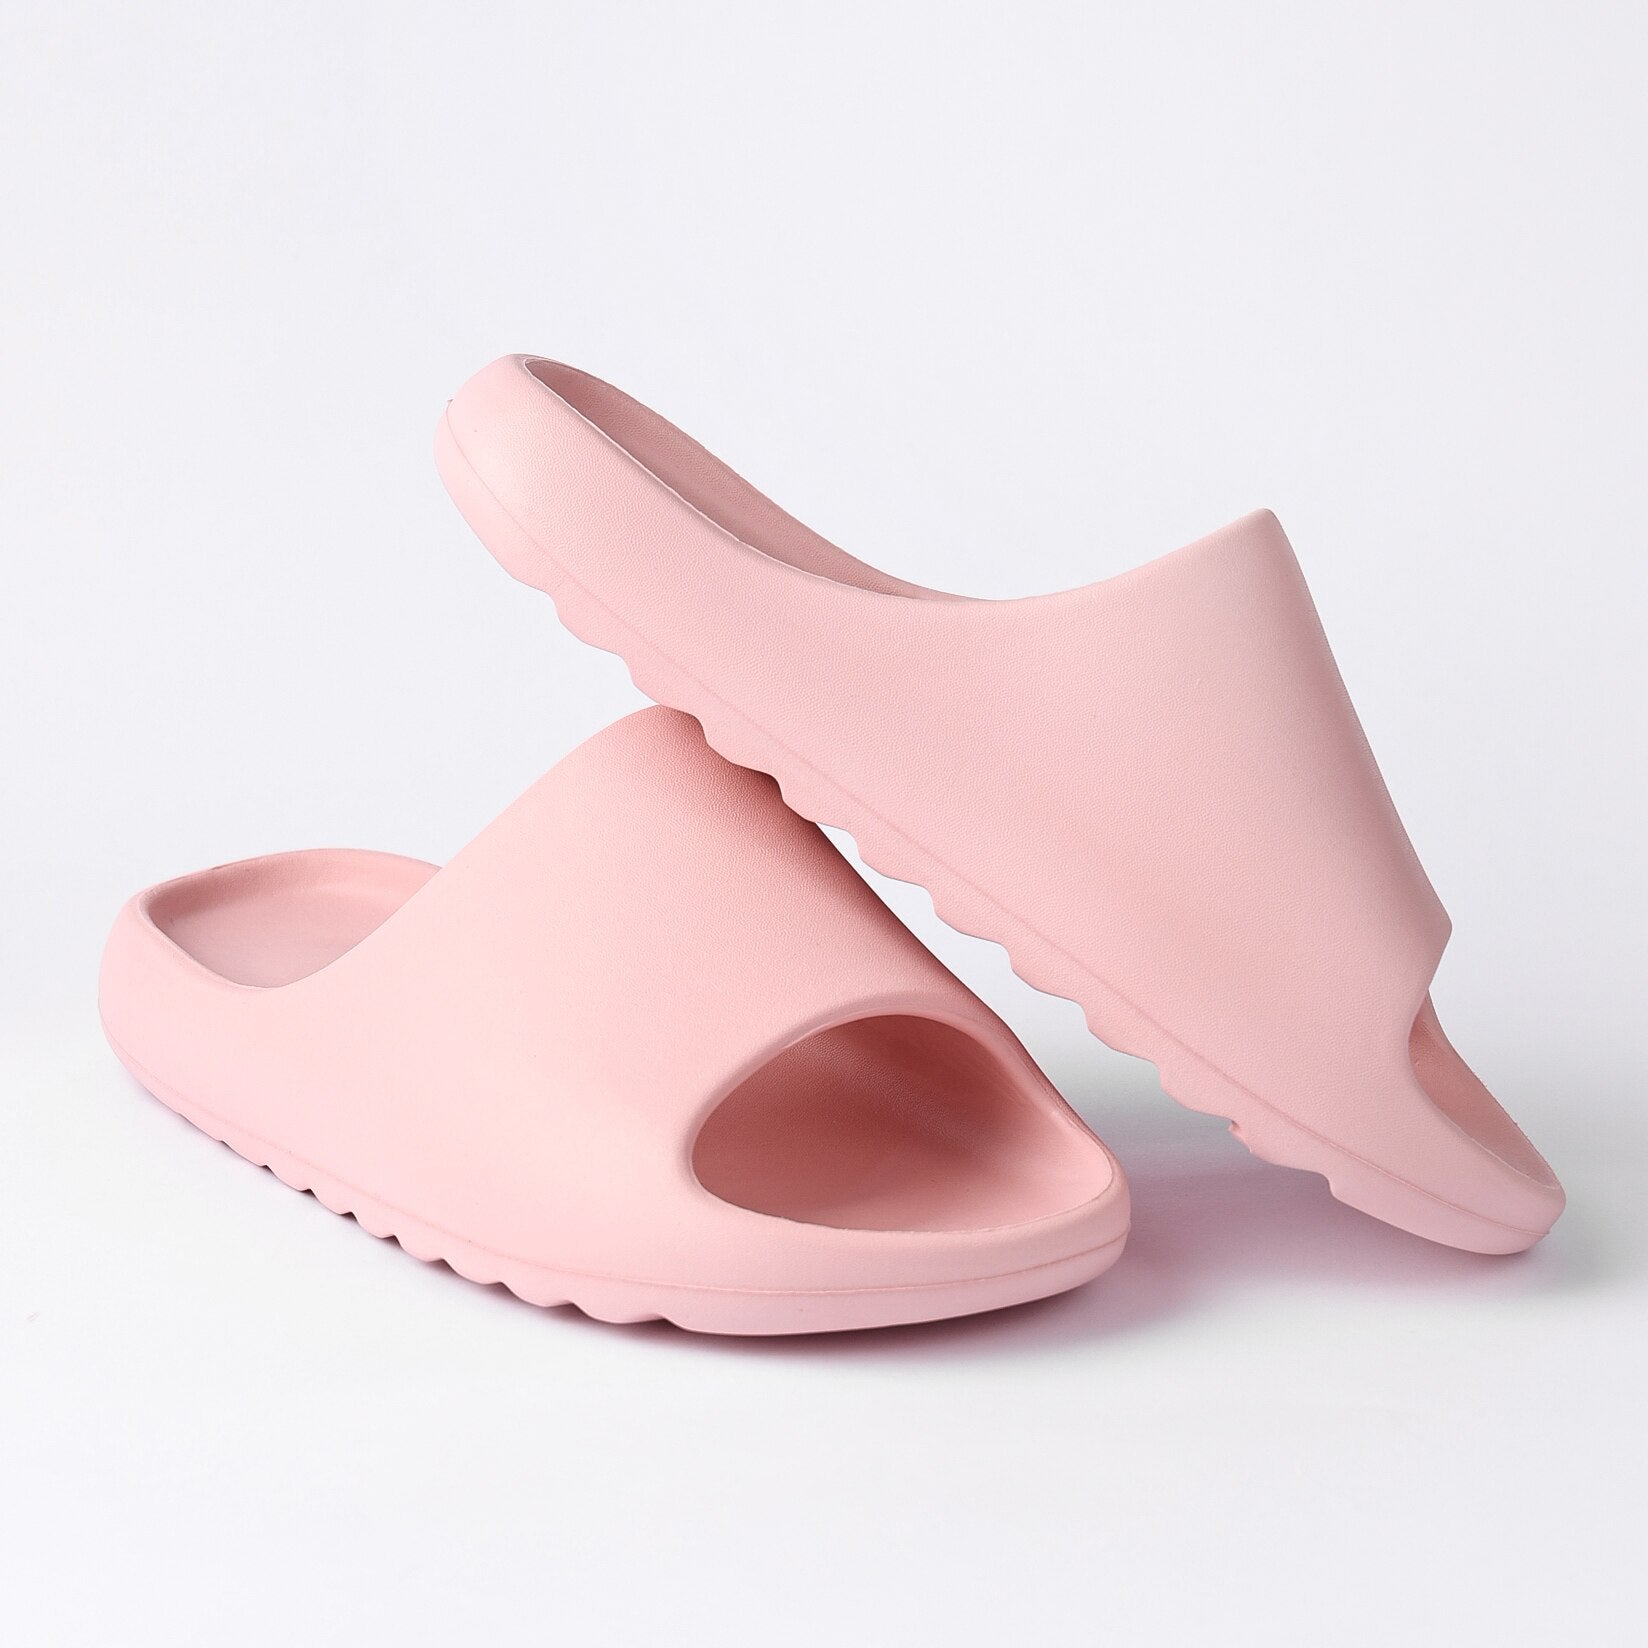 Pink Cloud Pillow Slide Sandals - Pink - 7.5-8.5